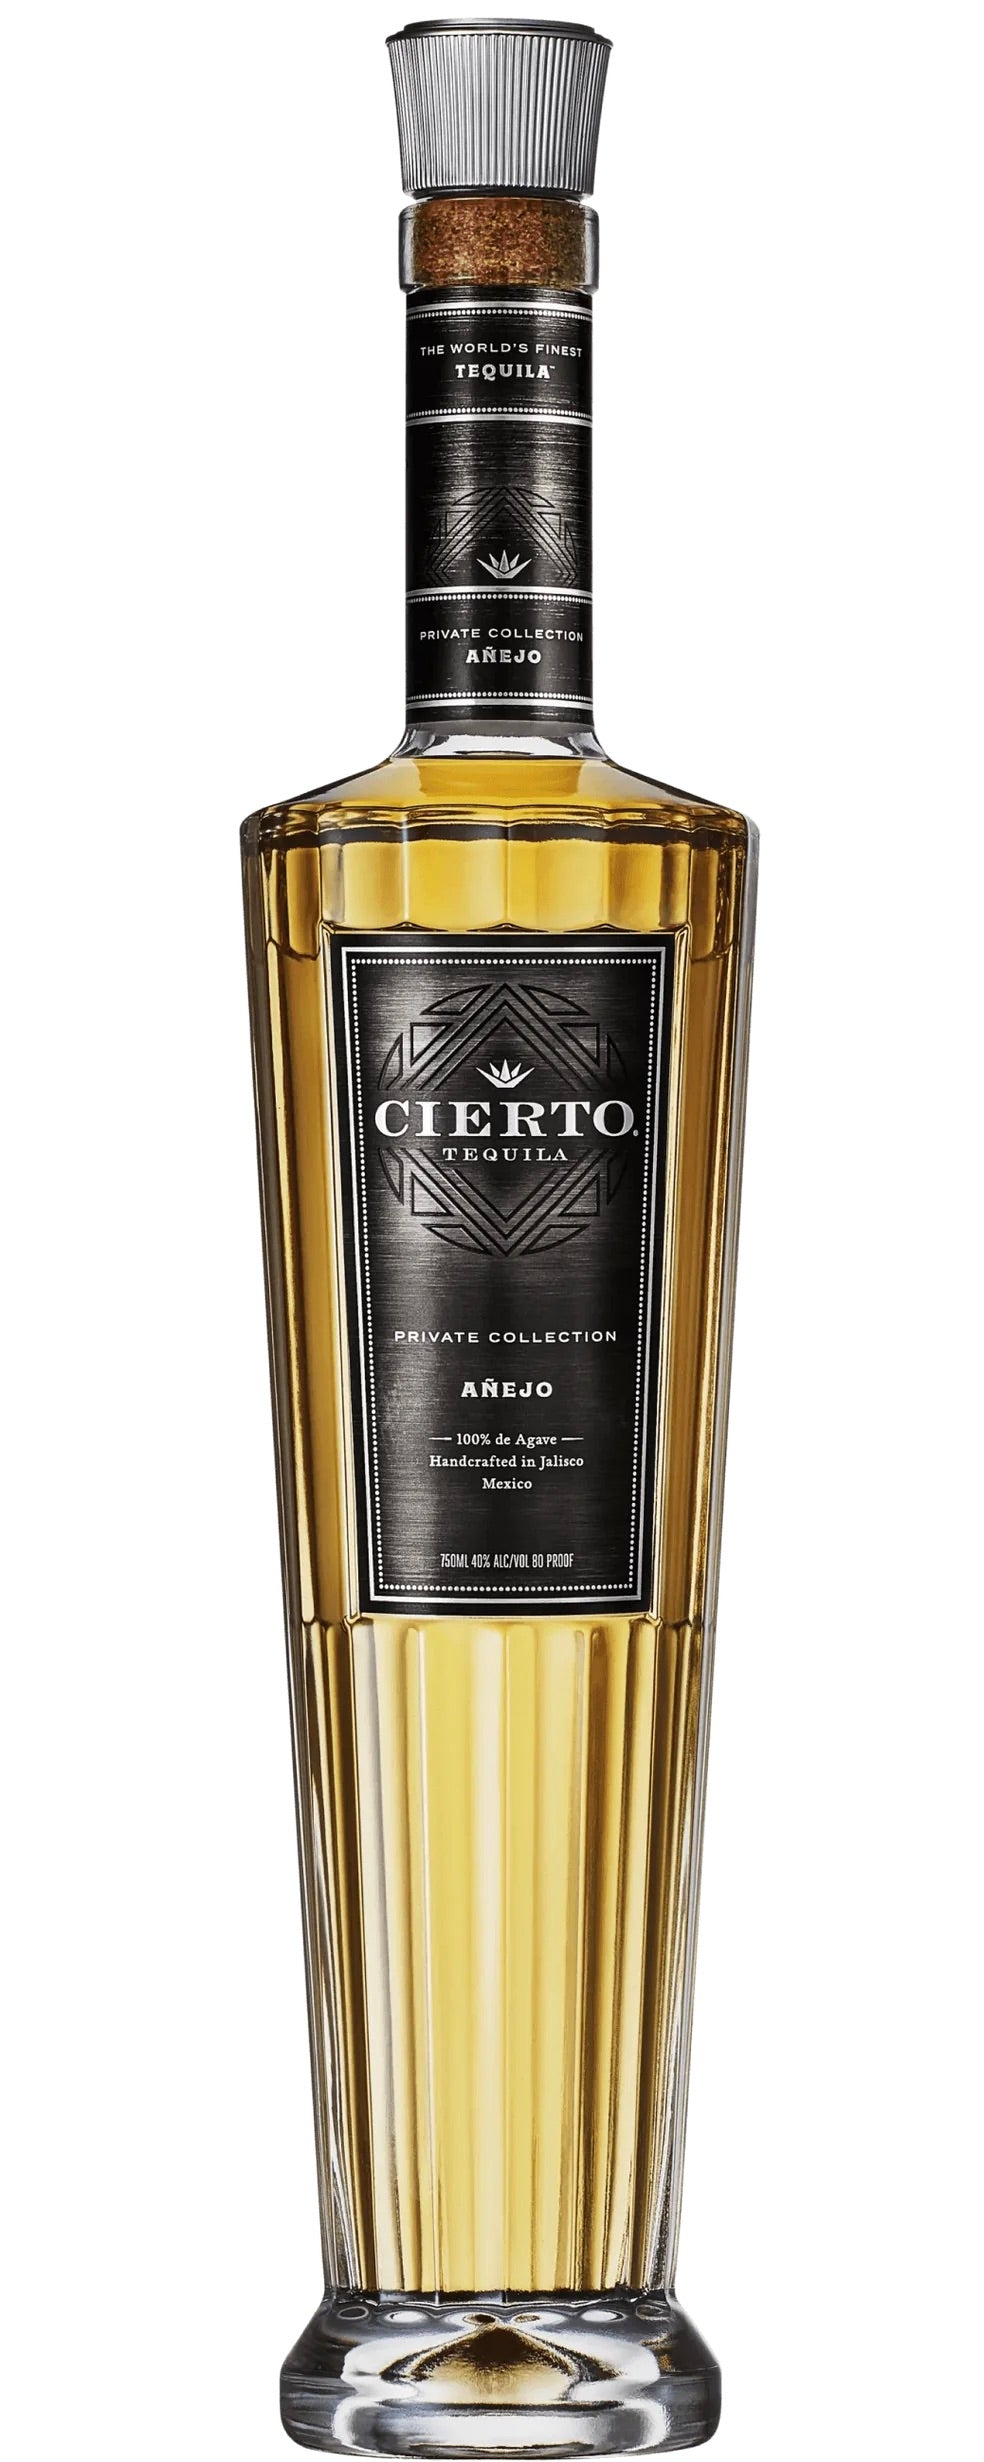 Cierto Tequila Anejo Private Collection